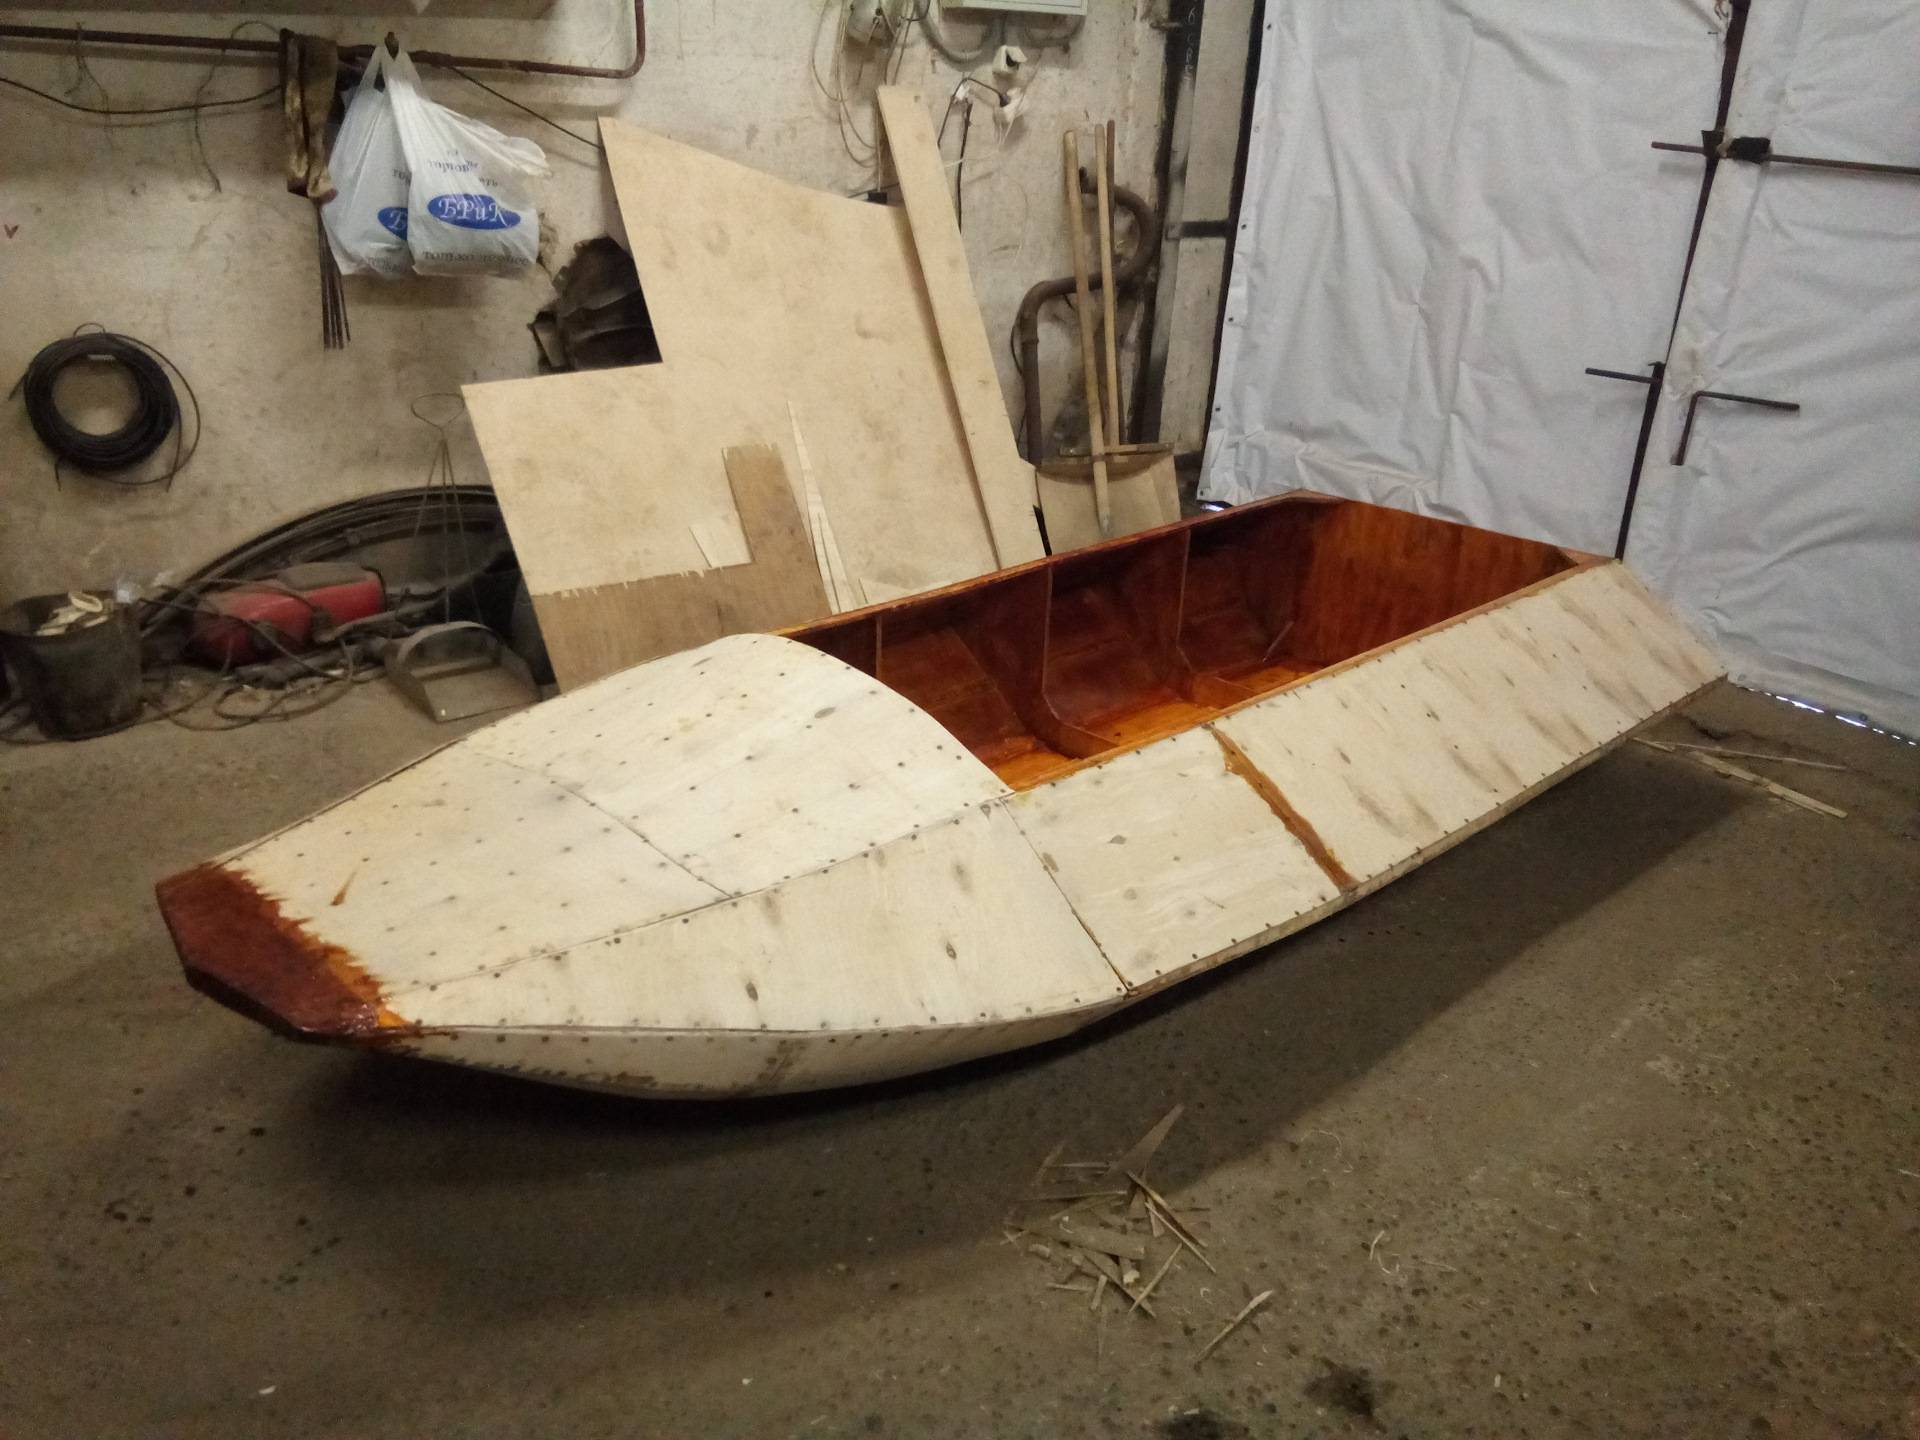 Самодельные лодки из фанеры: материалы и инструменты, чертежи и планировка, сборка корпуса, клеевые работы и окраска